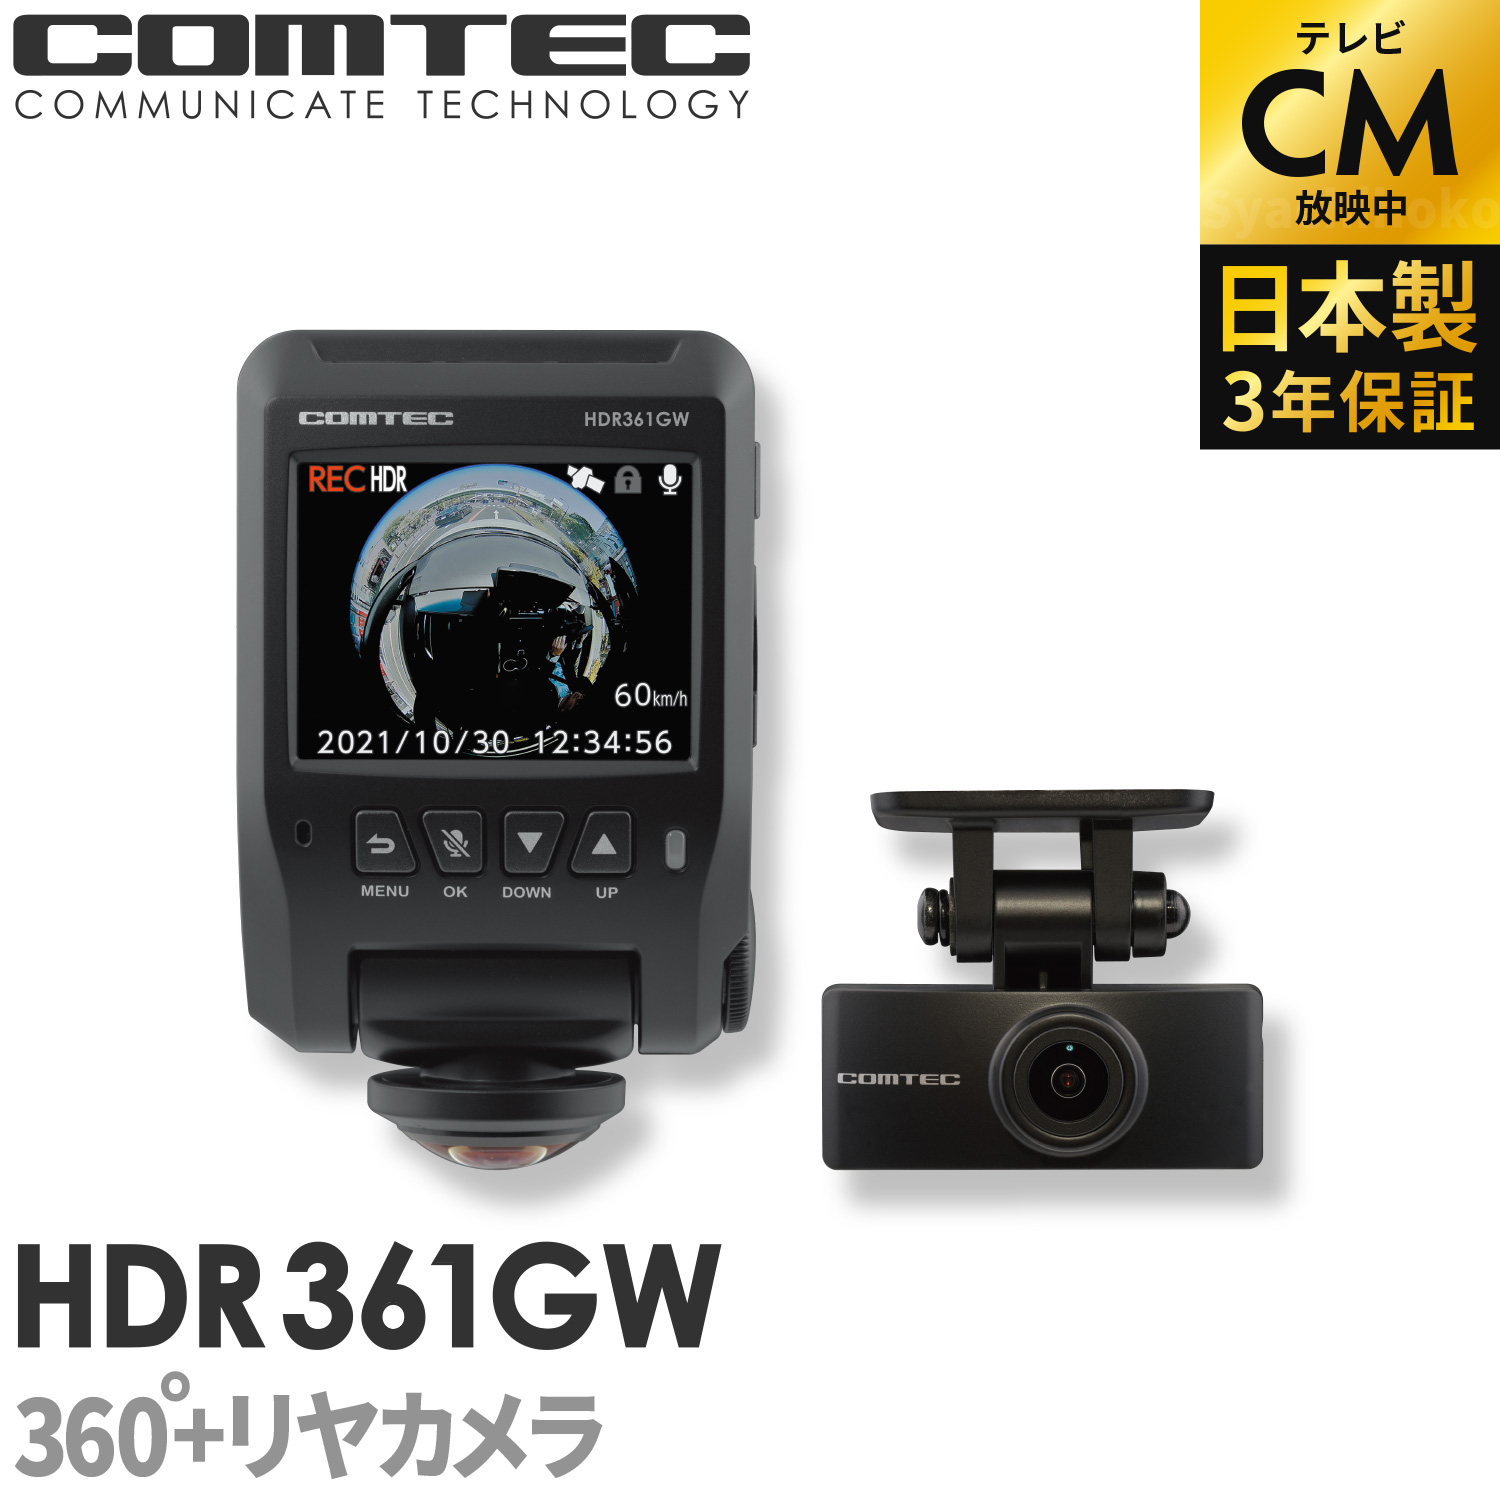 人気商品 2021年6月発売の新商品 ドライブレコーダー 日本製 3年保証 360度+リヤカメラ コムテック HDR361GW 前後左右 全方位記録  前後2カメラ ノイズ対策済 常時 衝撃録画 GPS搭載 駐車監視対応 2.4インチ液晶 ドラレコ 安価